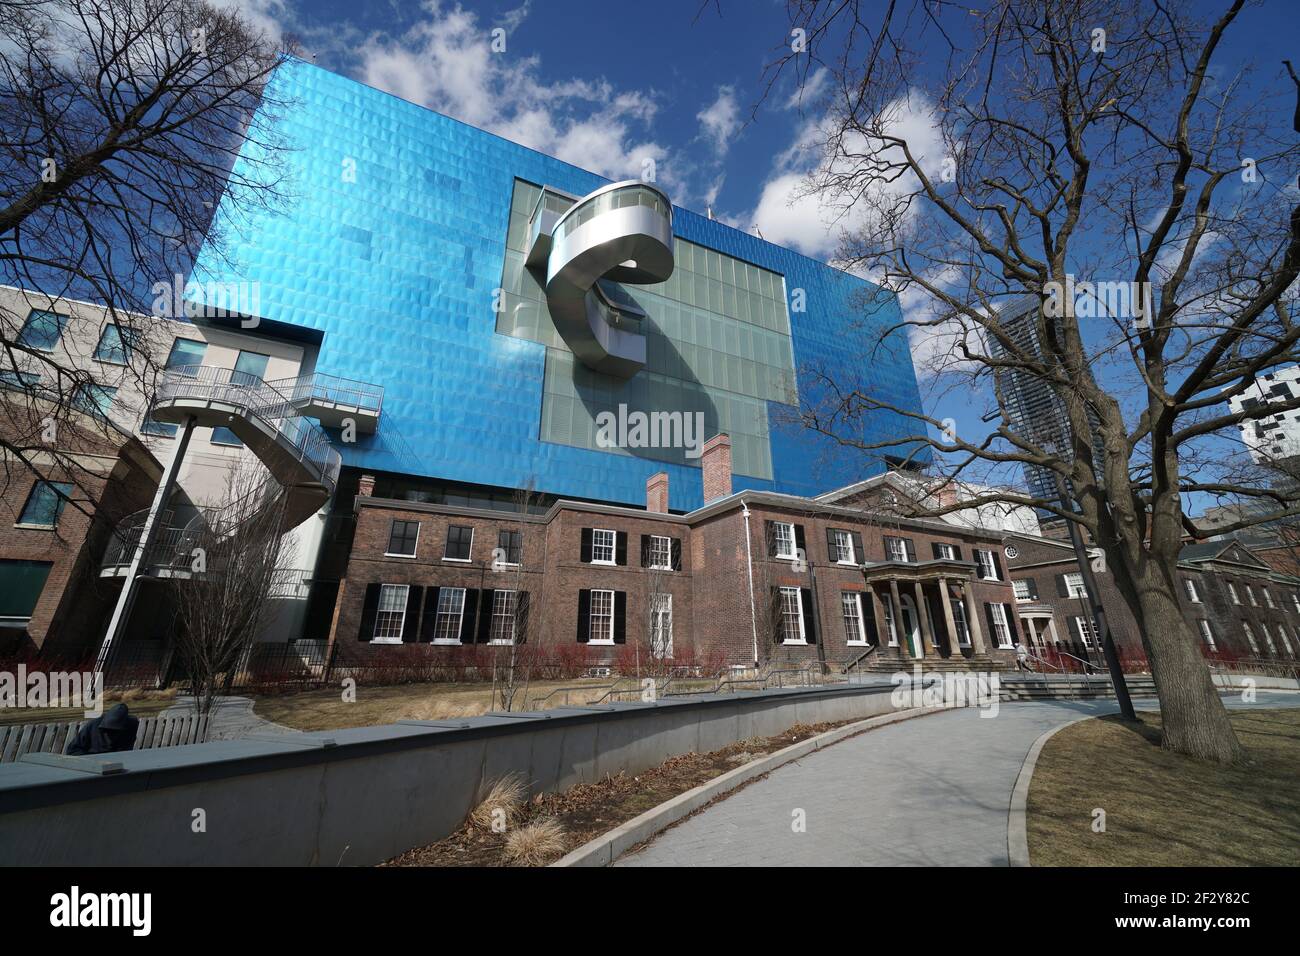 Toronto, eine moderne Ergänzung der Art Gallery of Ontario, entworfen vom Architekten Frank Gehry, erhebt sich hinter dem älteren Original Stockfoto